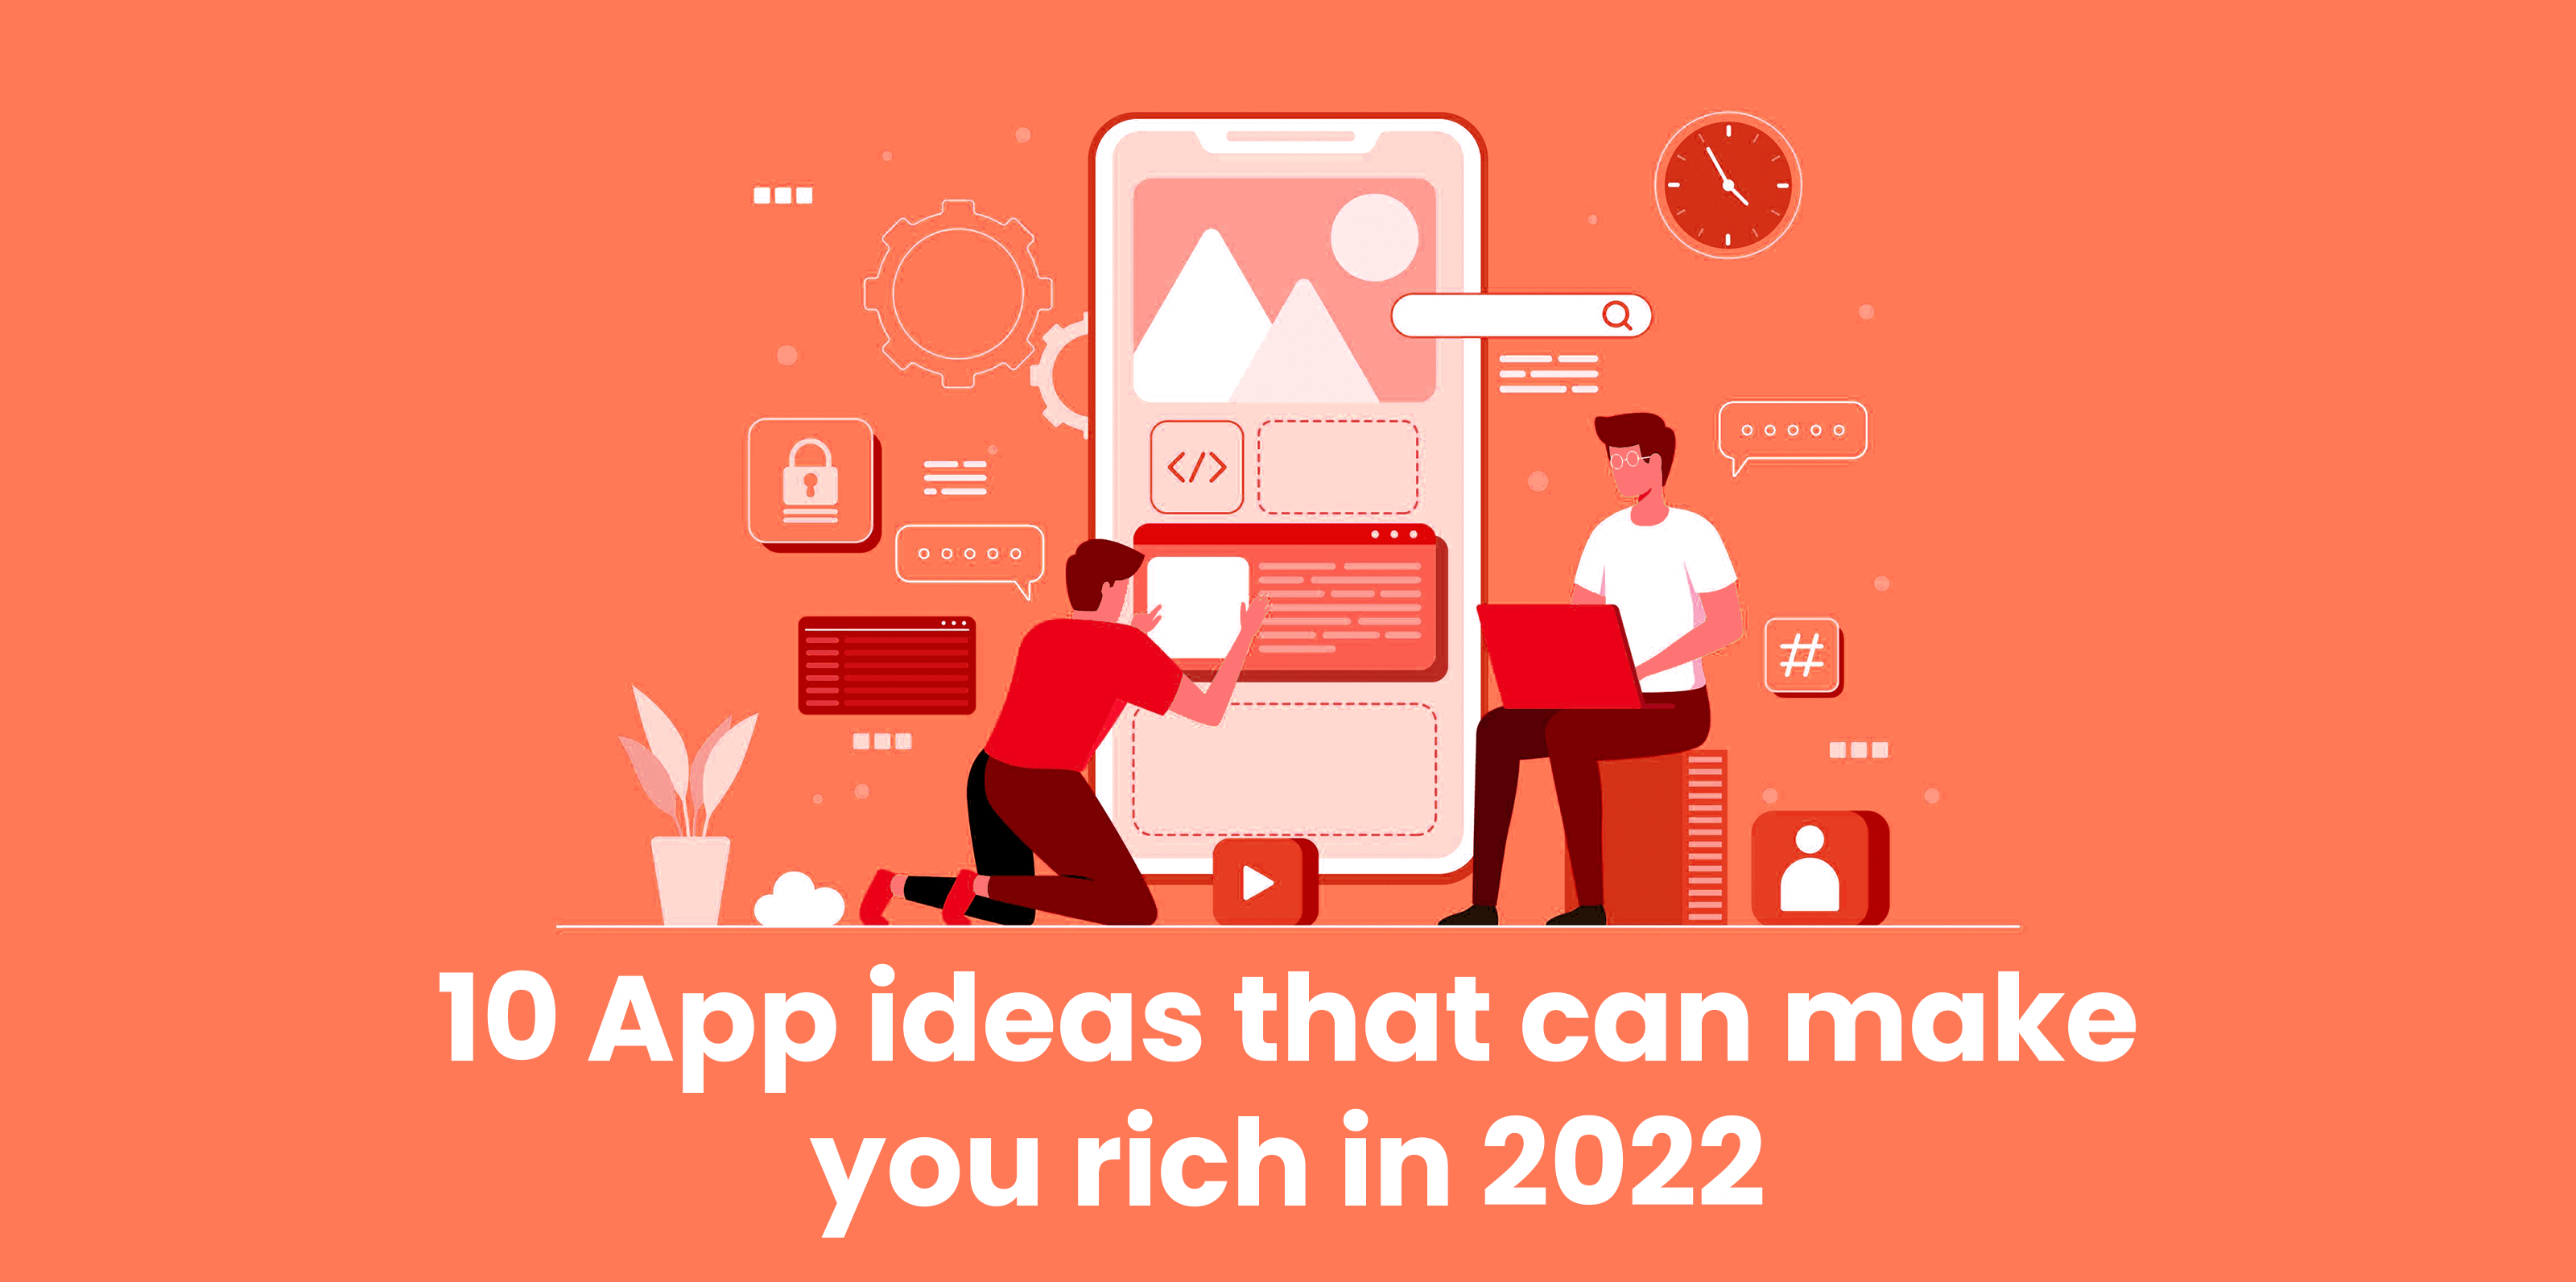 10-App-idee-chì-puderanu-ricchi-in-2022